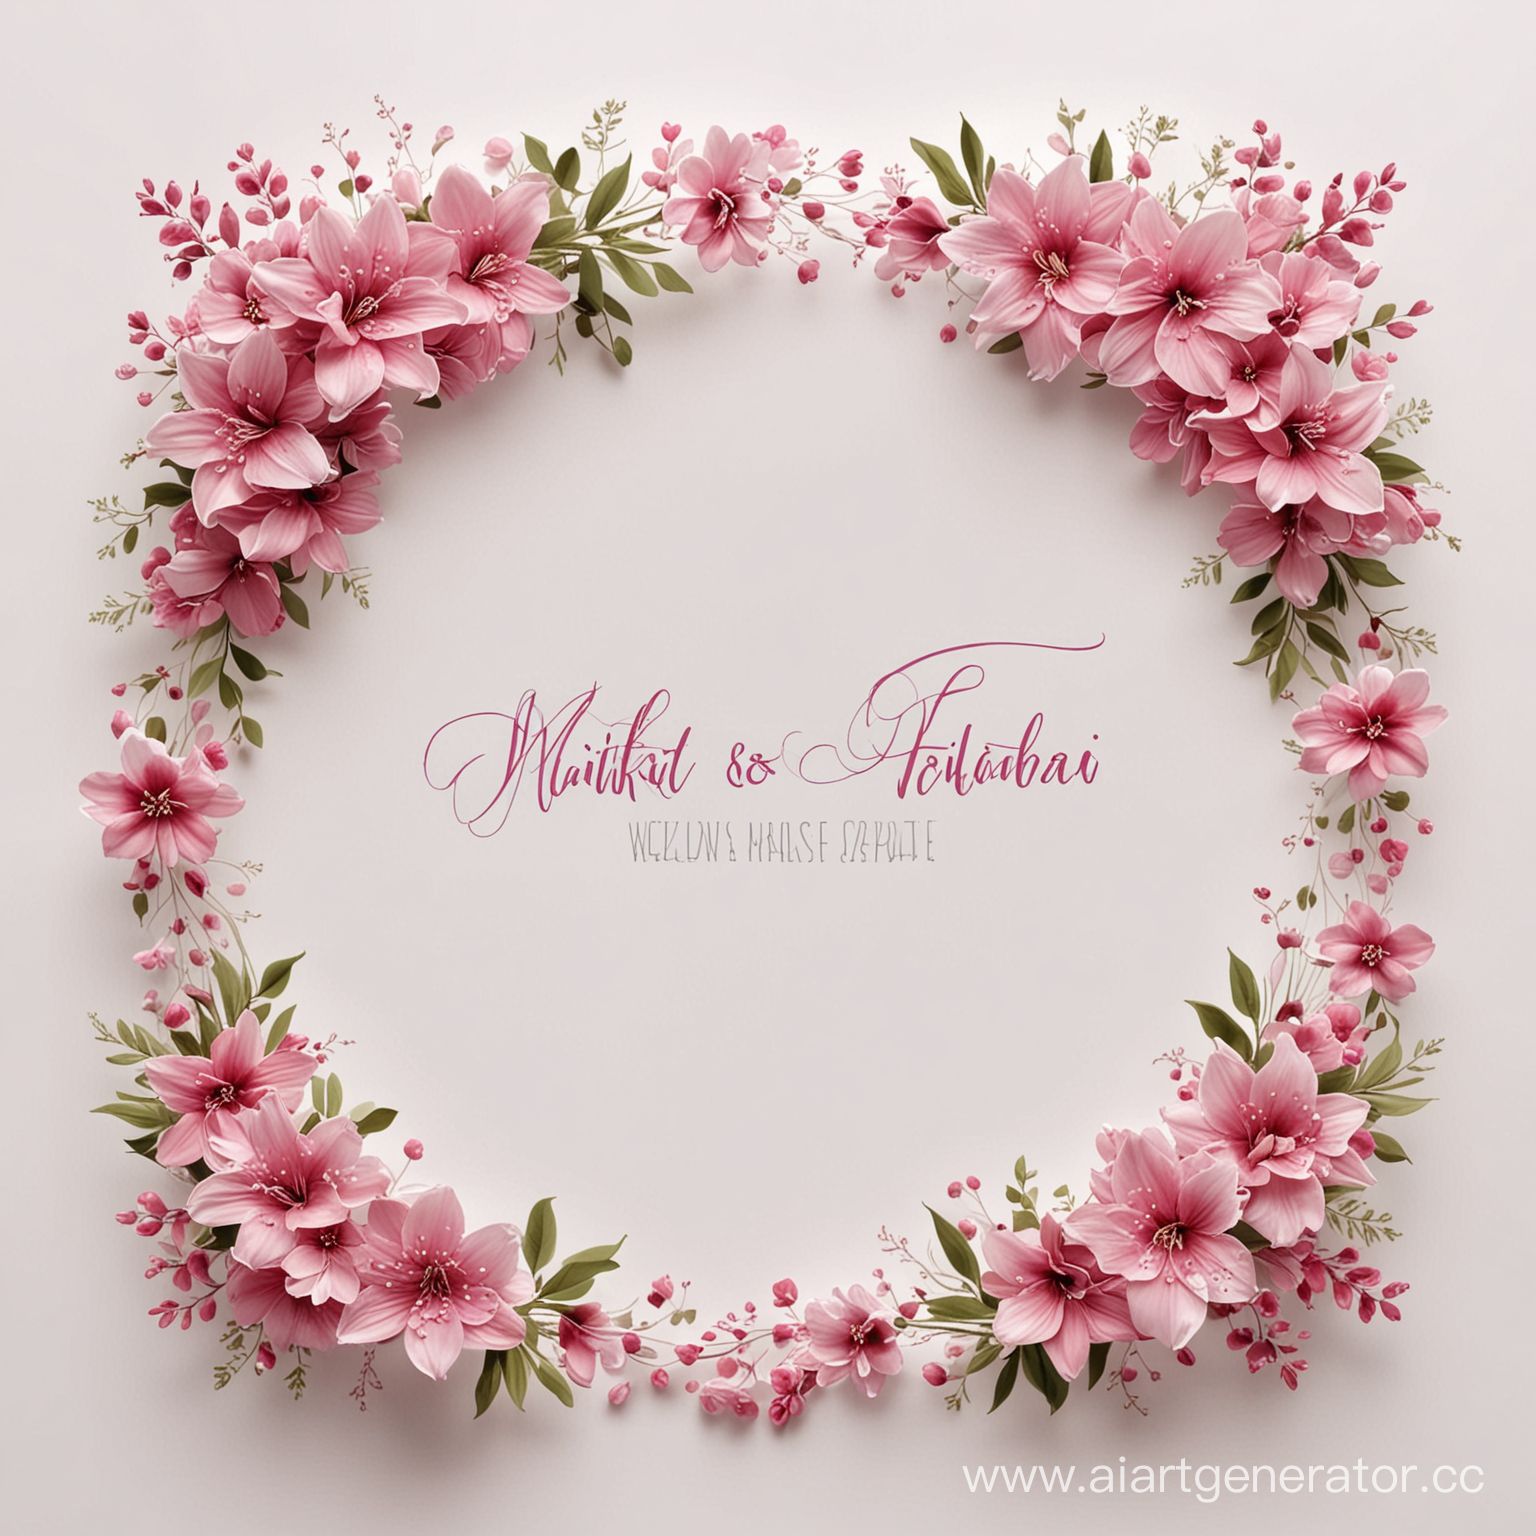 свадебный футаж, белый фон, розовые цветы по краям, надпись в центре: Никита и  Татьяна 